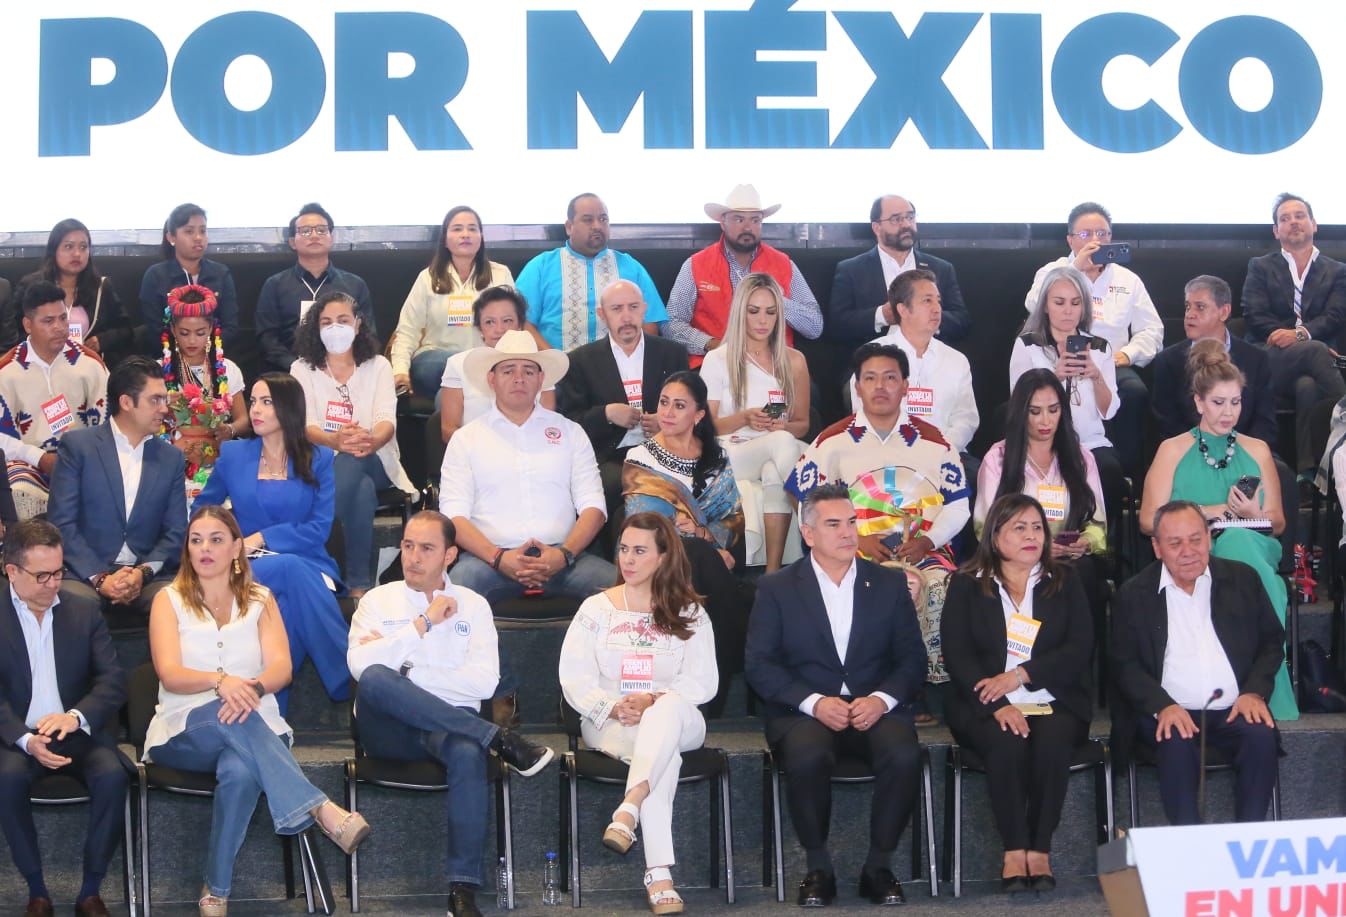 Crean Frente Amplio por México para elegir al candidato presidencial